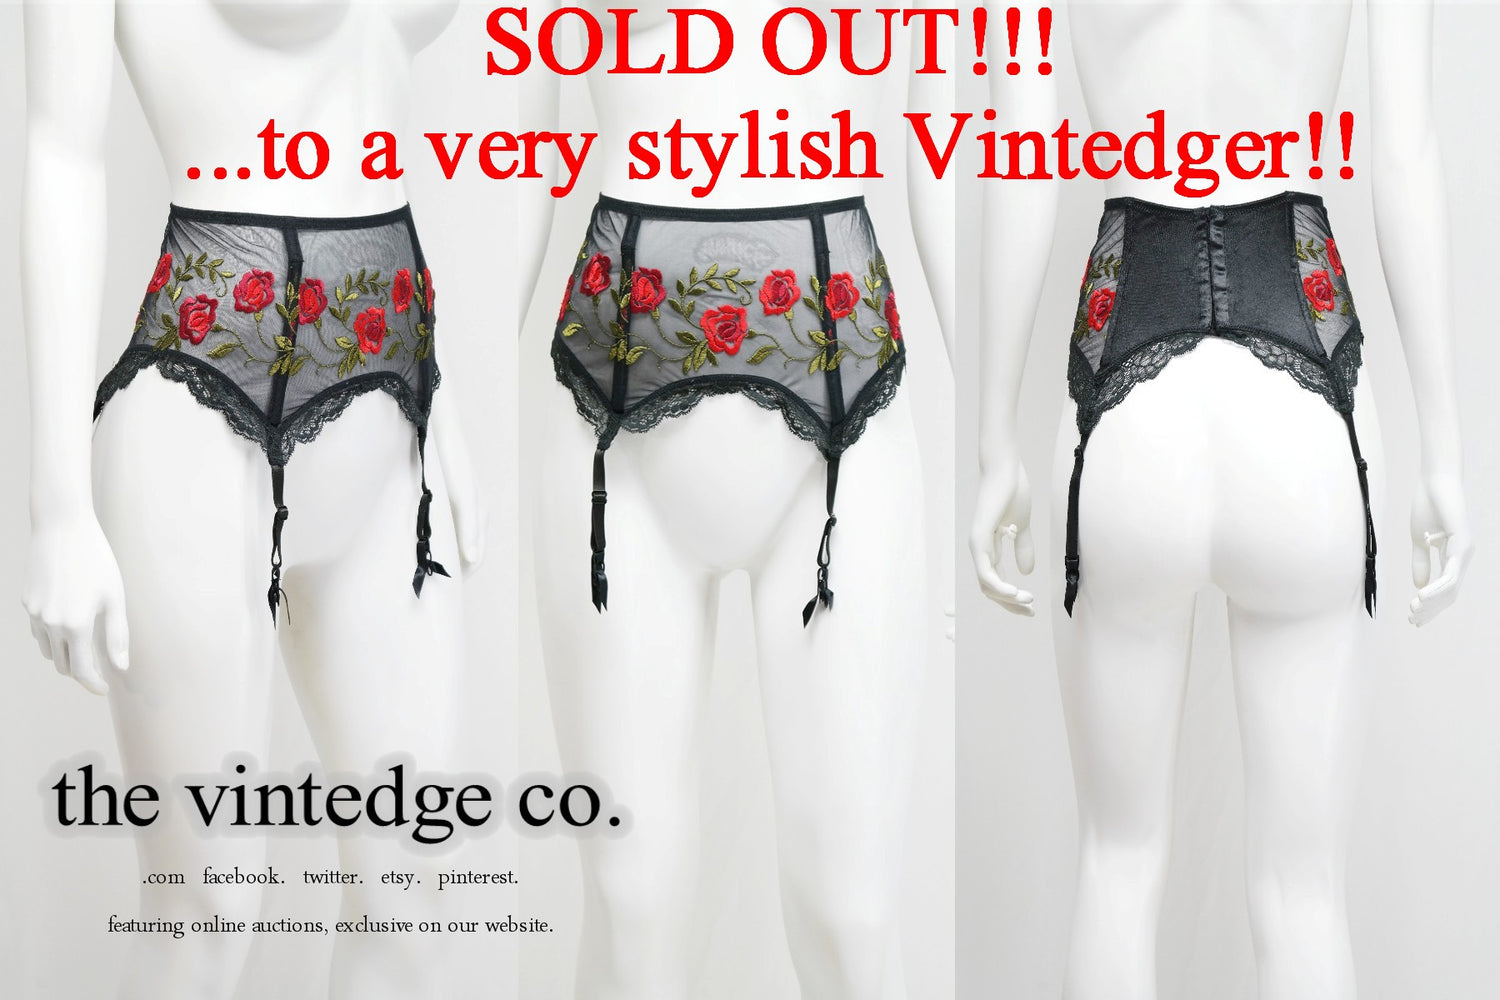 SOLD - Victorias Secret The Vintedge Co.